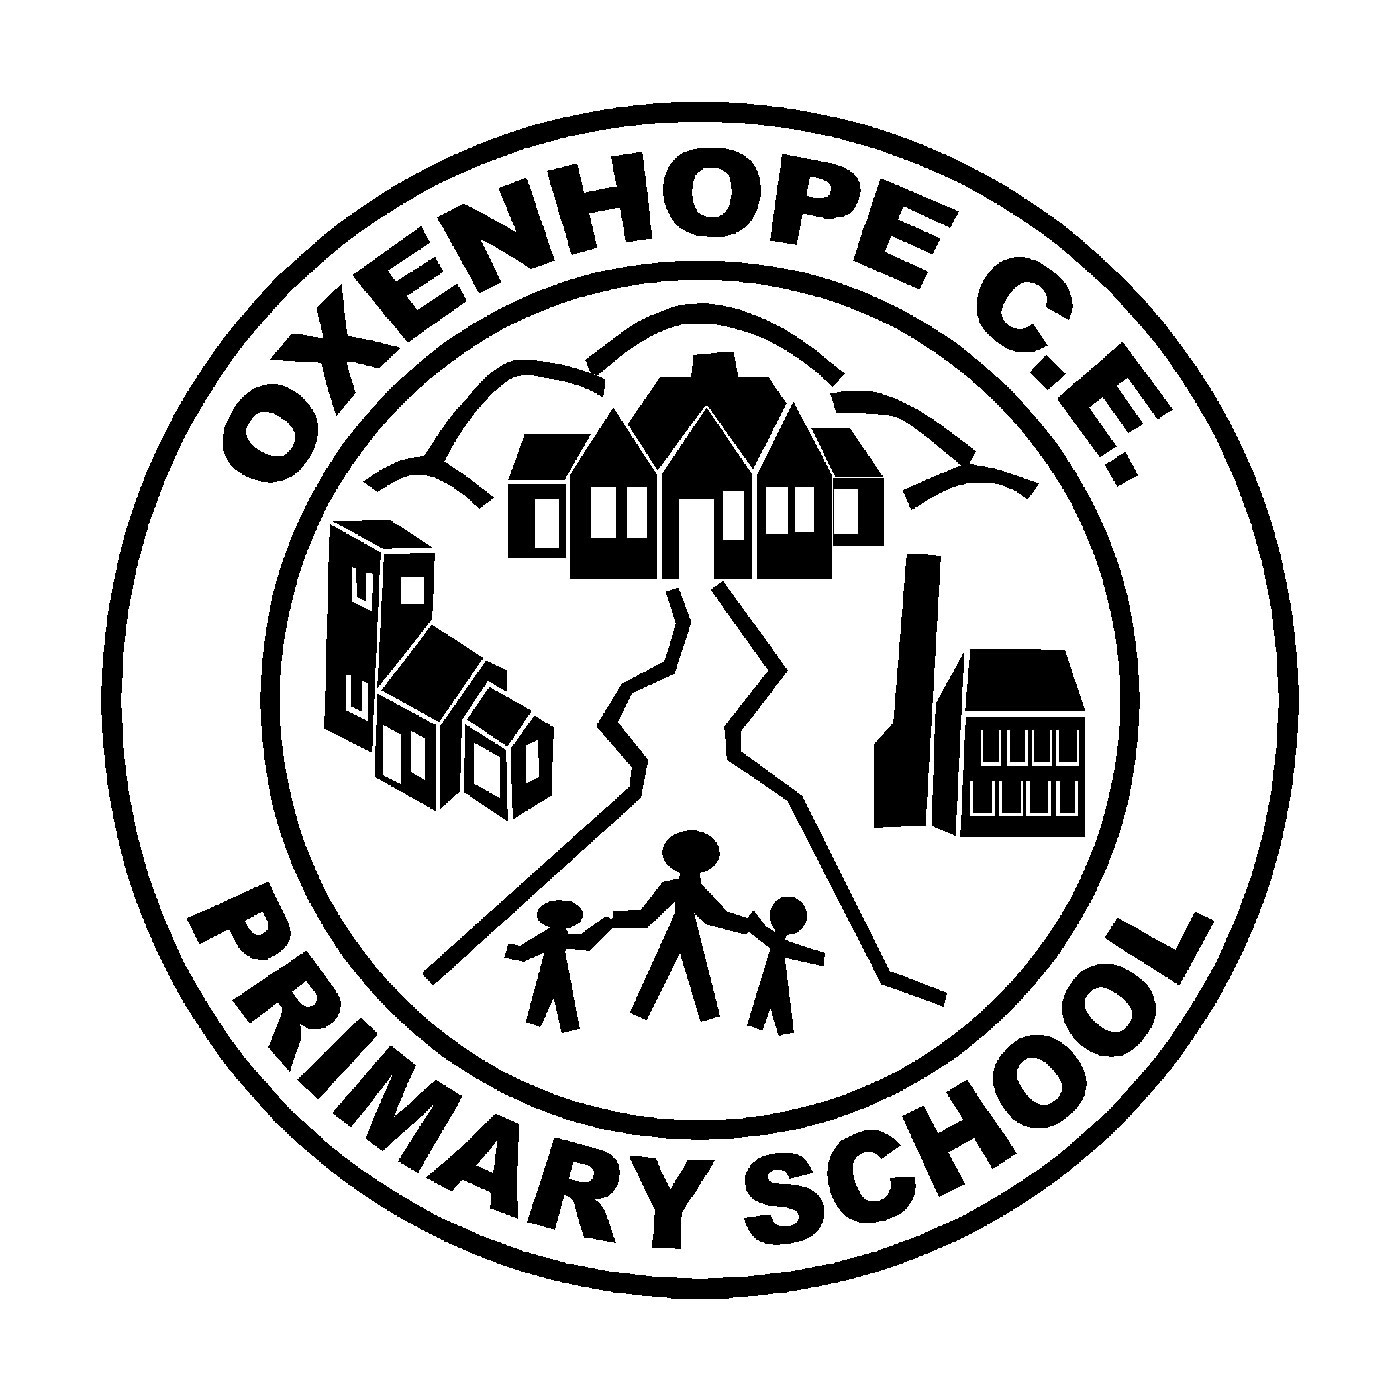 Oxenhope CofE Primary School logo